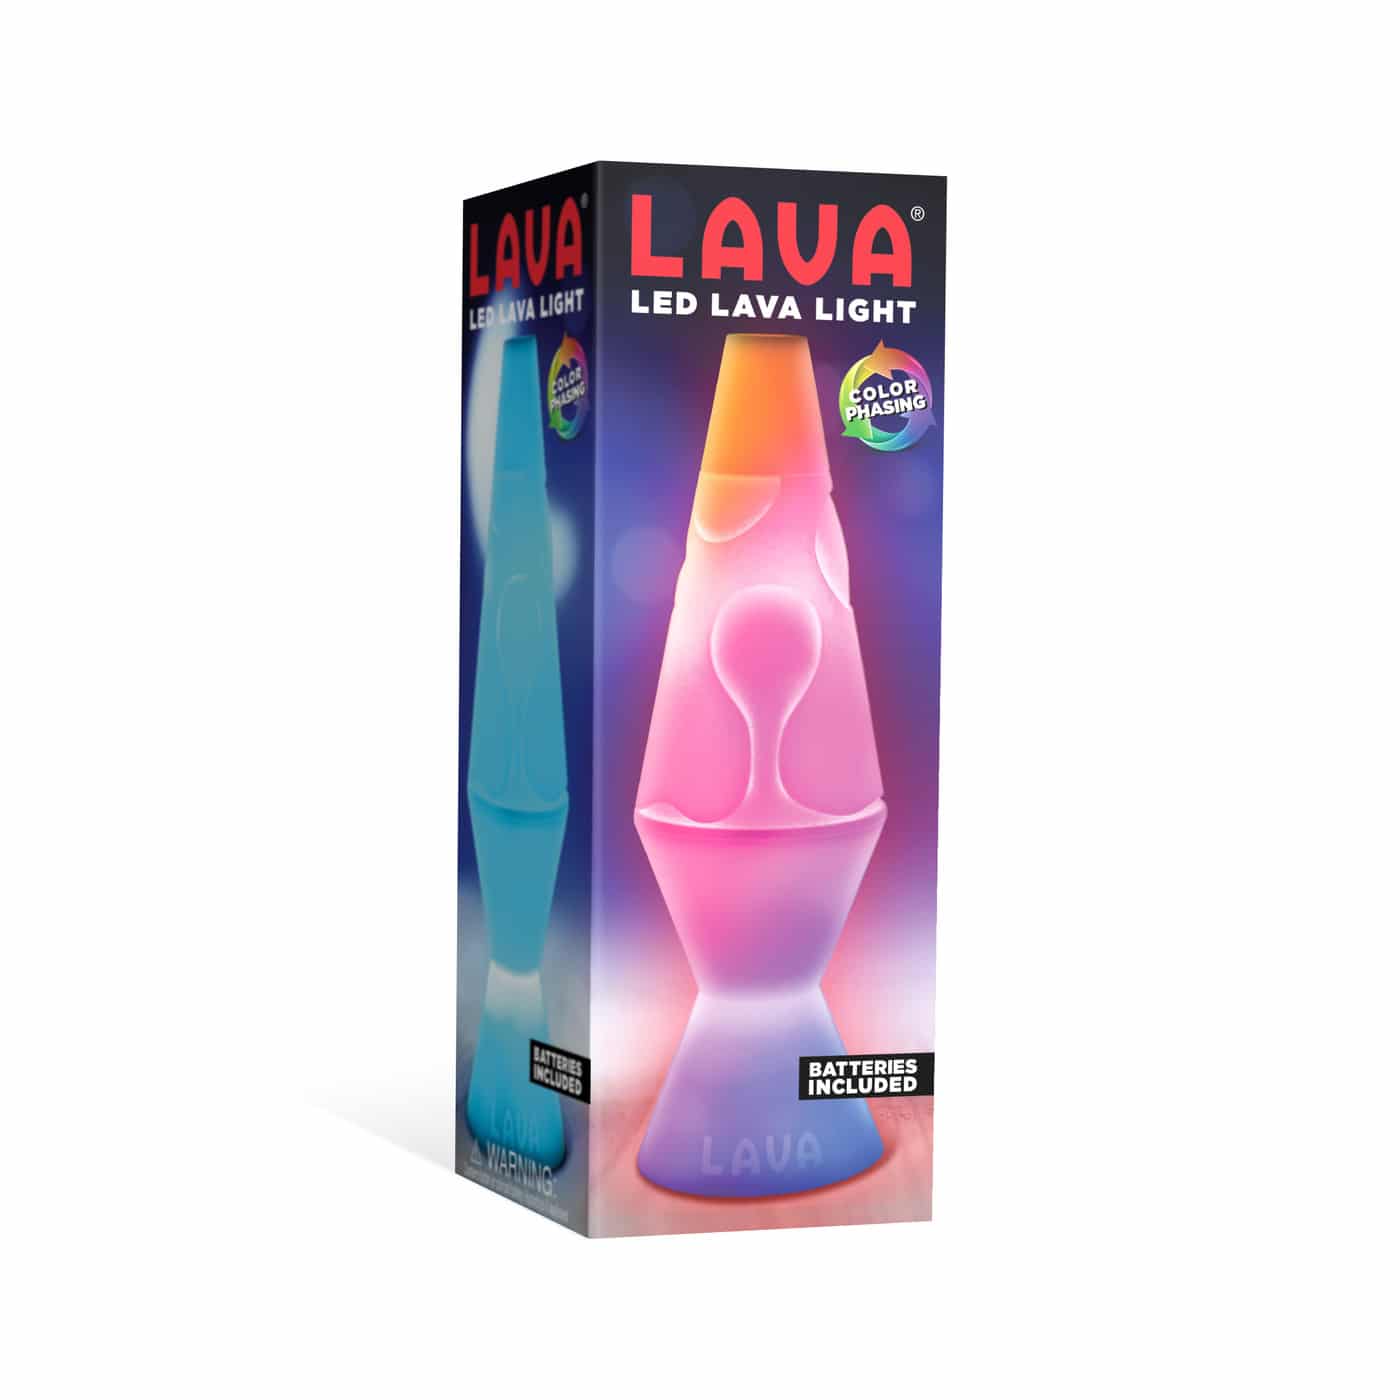 LAVA LED Lava Light